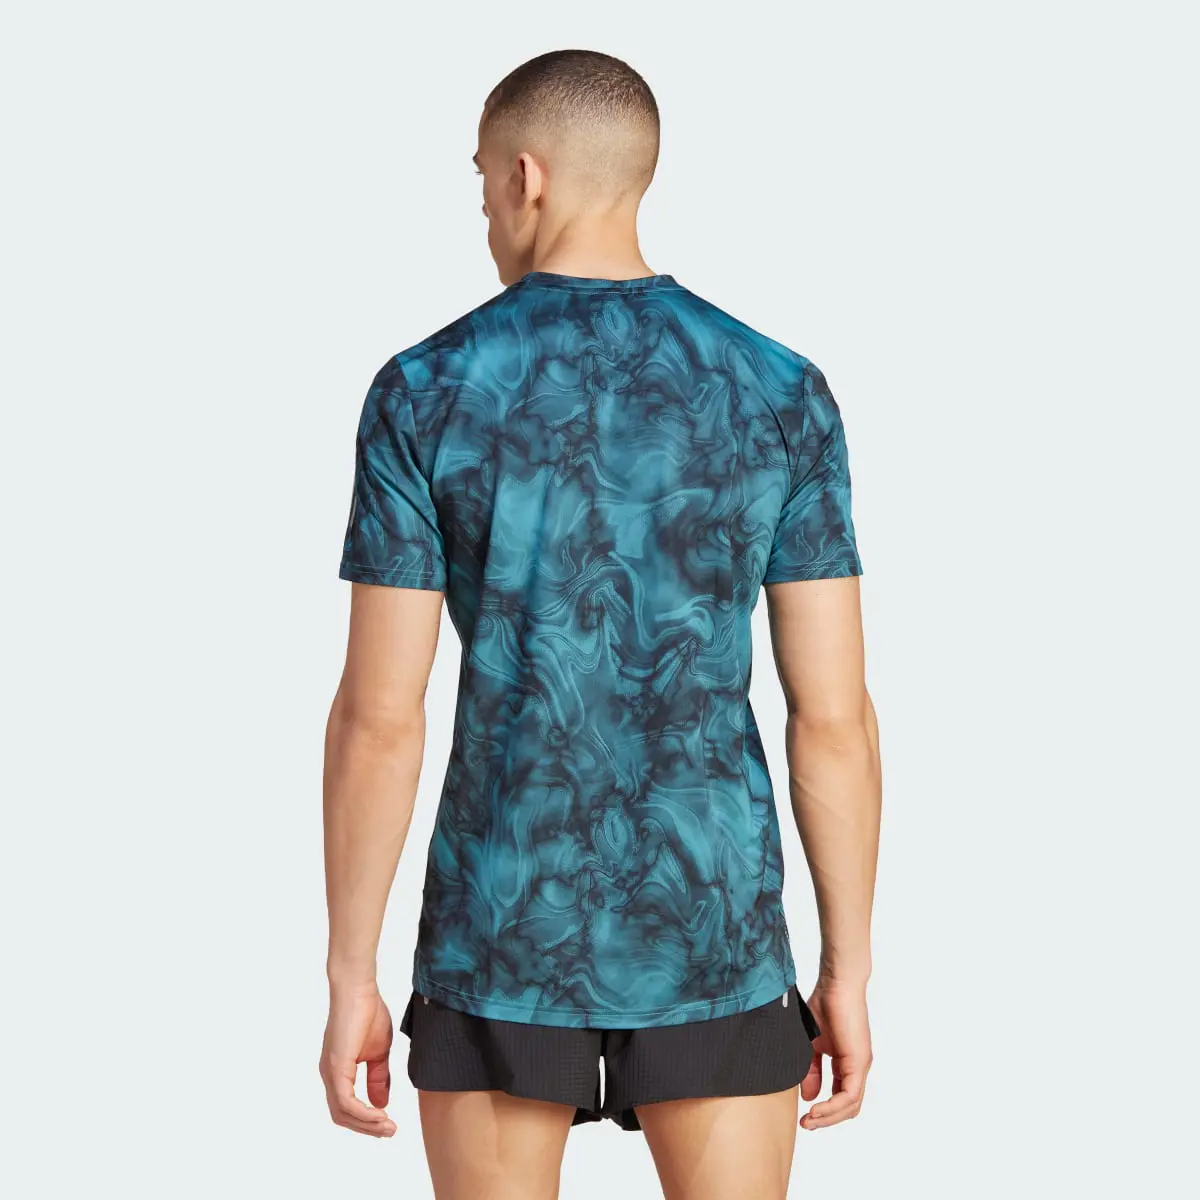 Adidas Own the Run Allover Print T-Shirt. 3